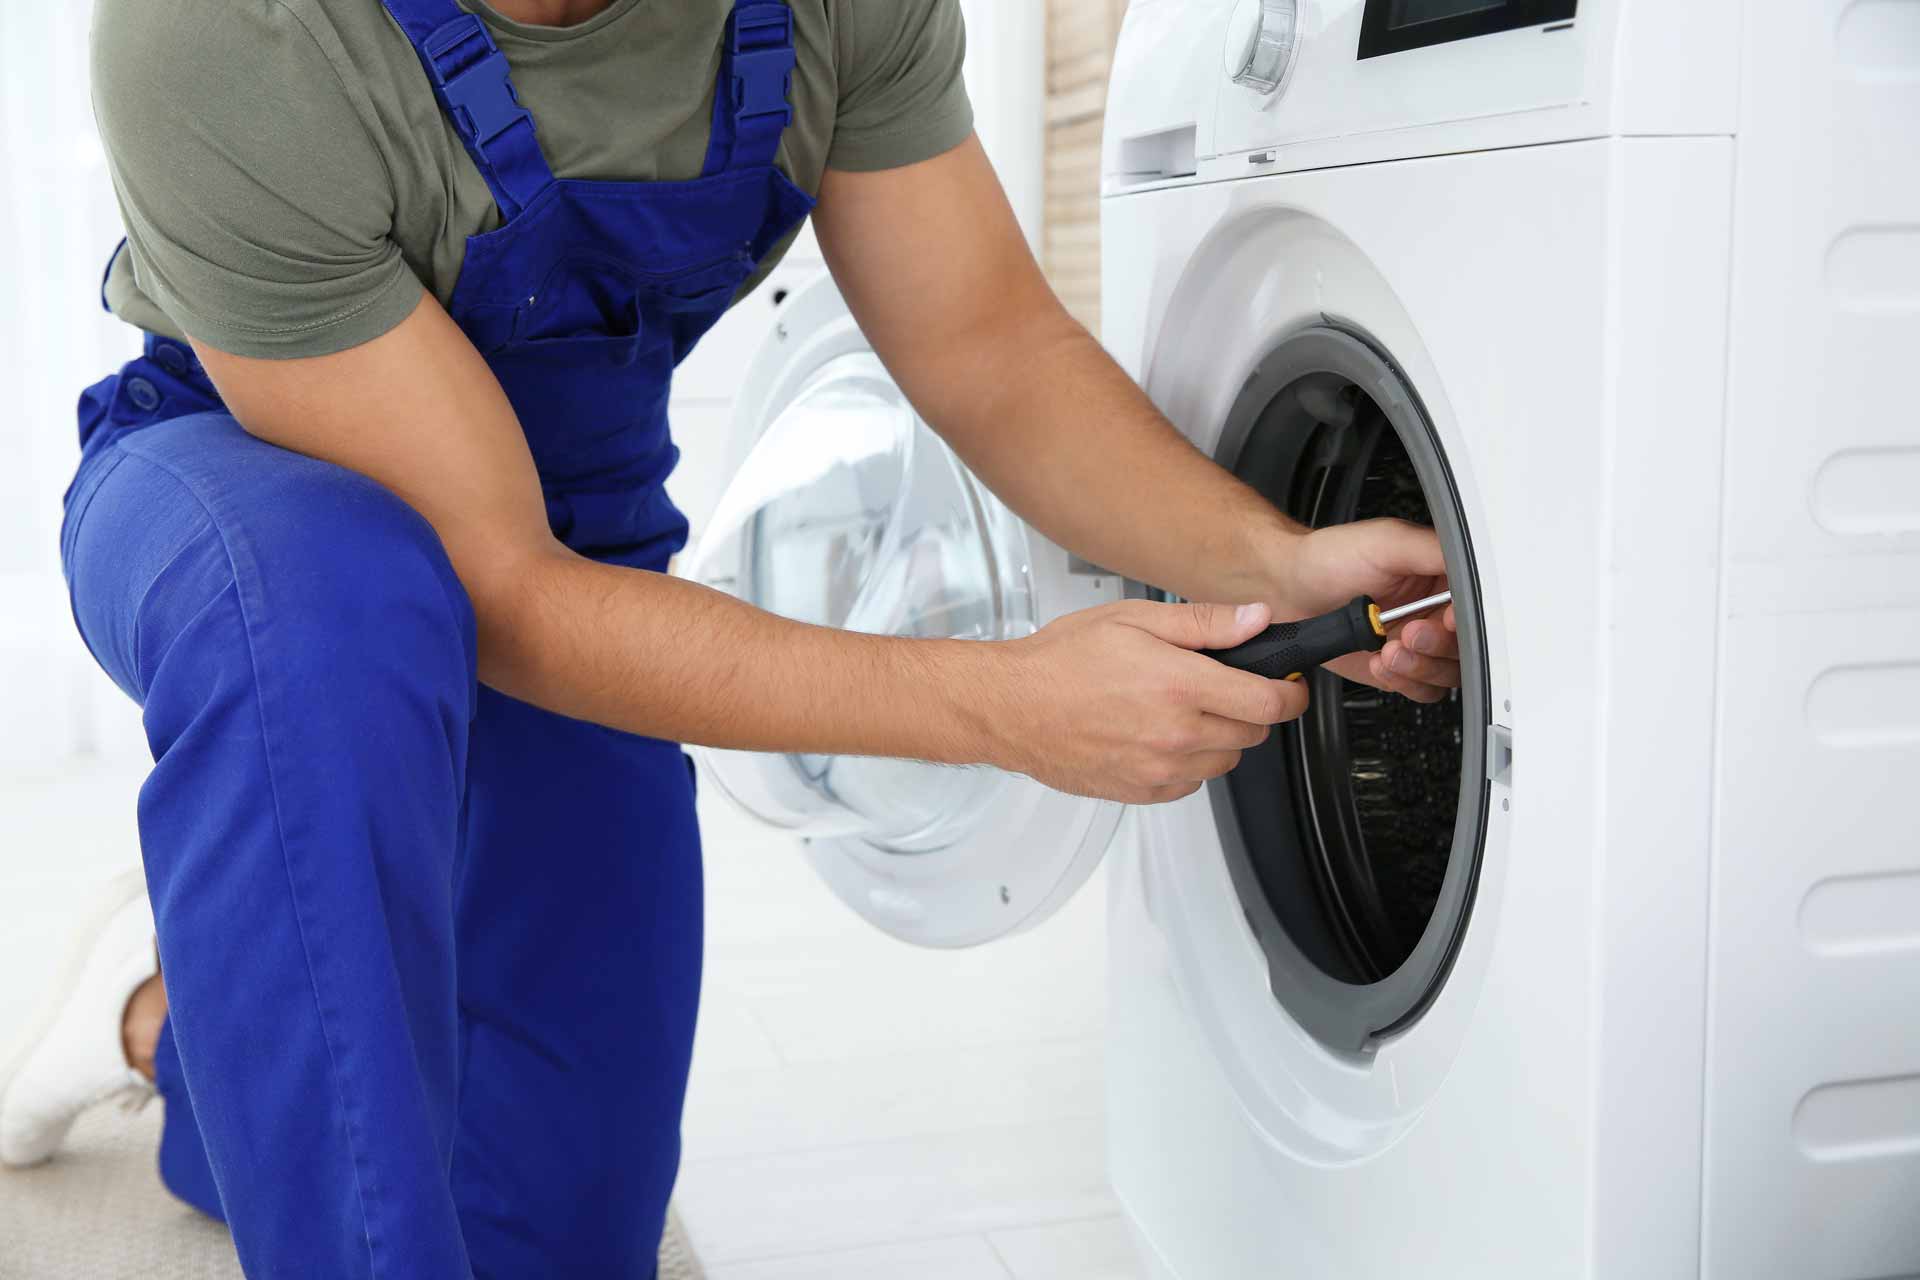 a man fixing a washing machine